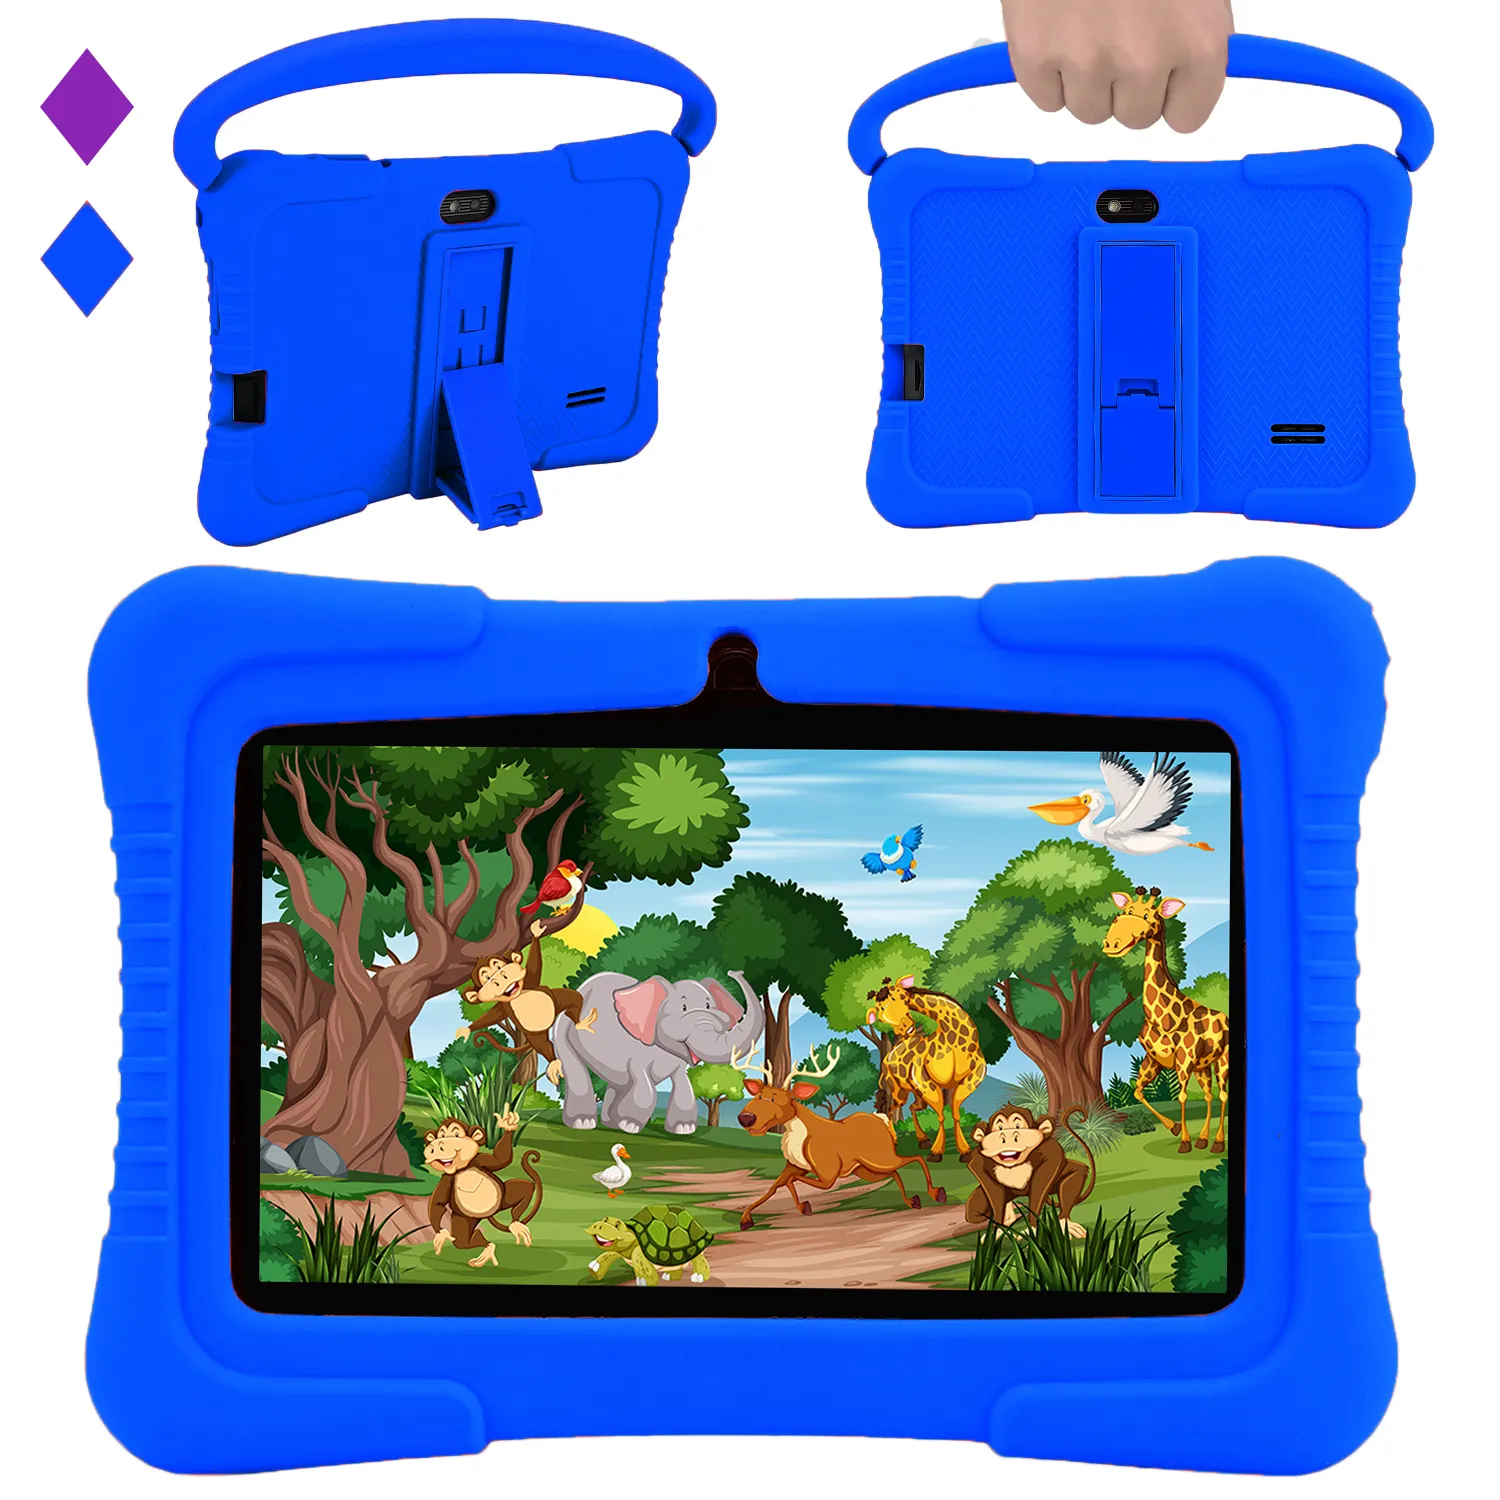 Veidoo çocuklar Tablet Pc 7 inç Android Tablet çocuklar için 2GB Ram 32GB depolama yürümeye başlayan Tablet IPS ekran ebeveyn kontrolü ile